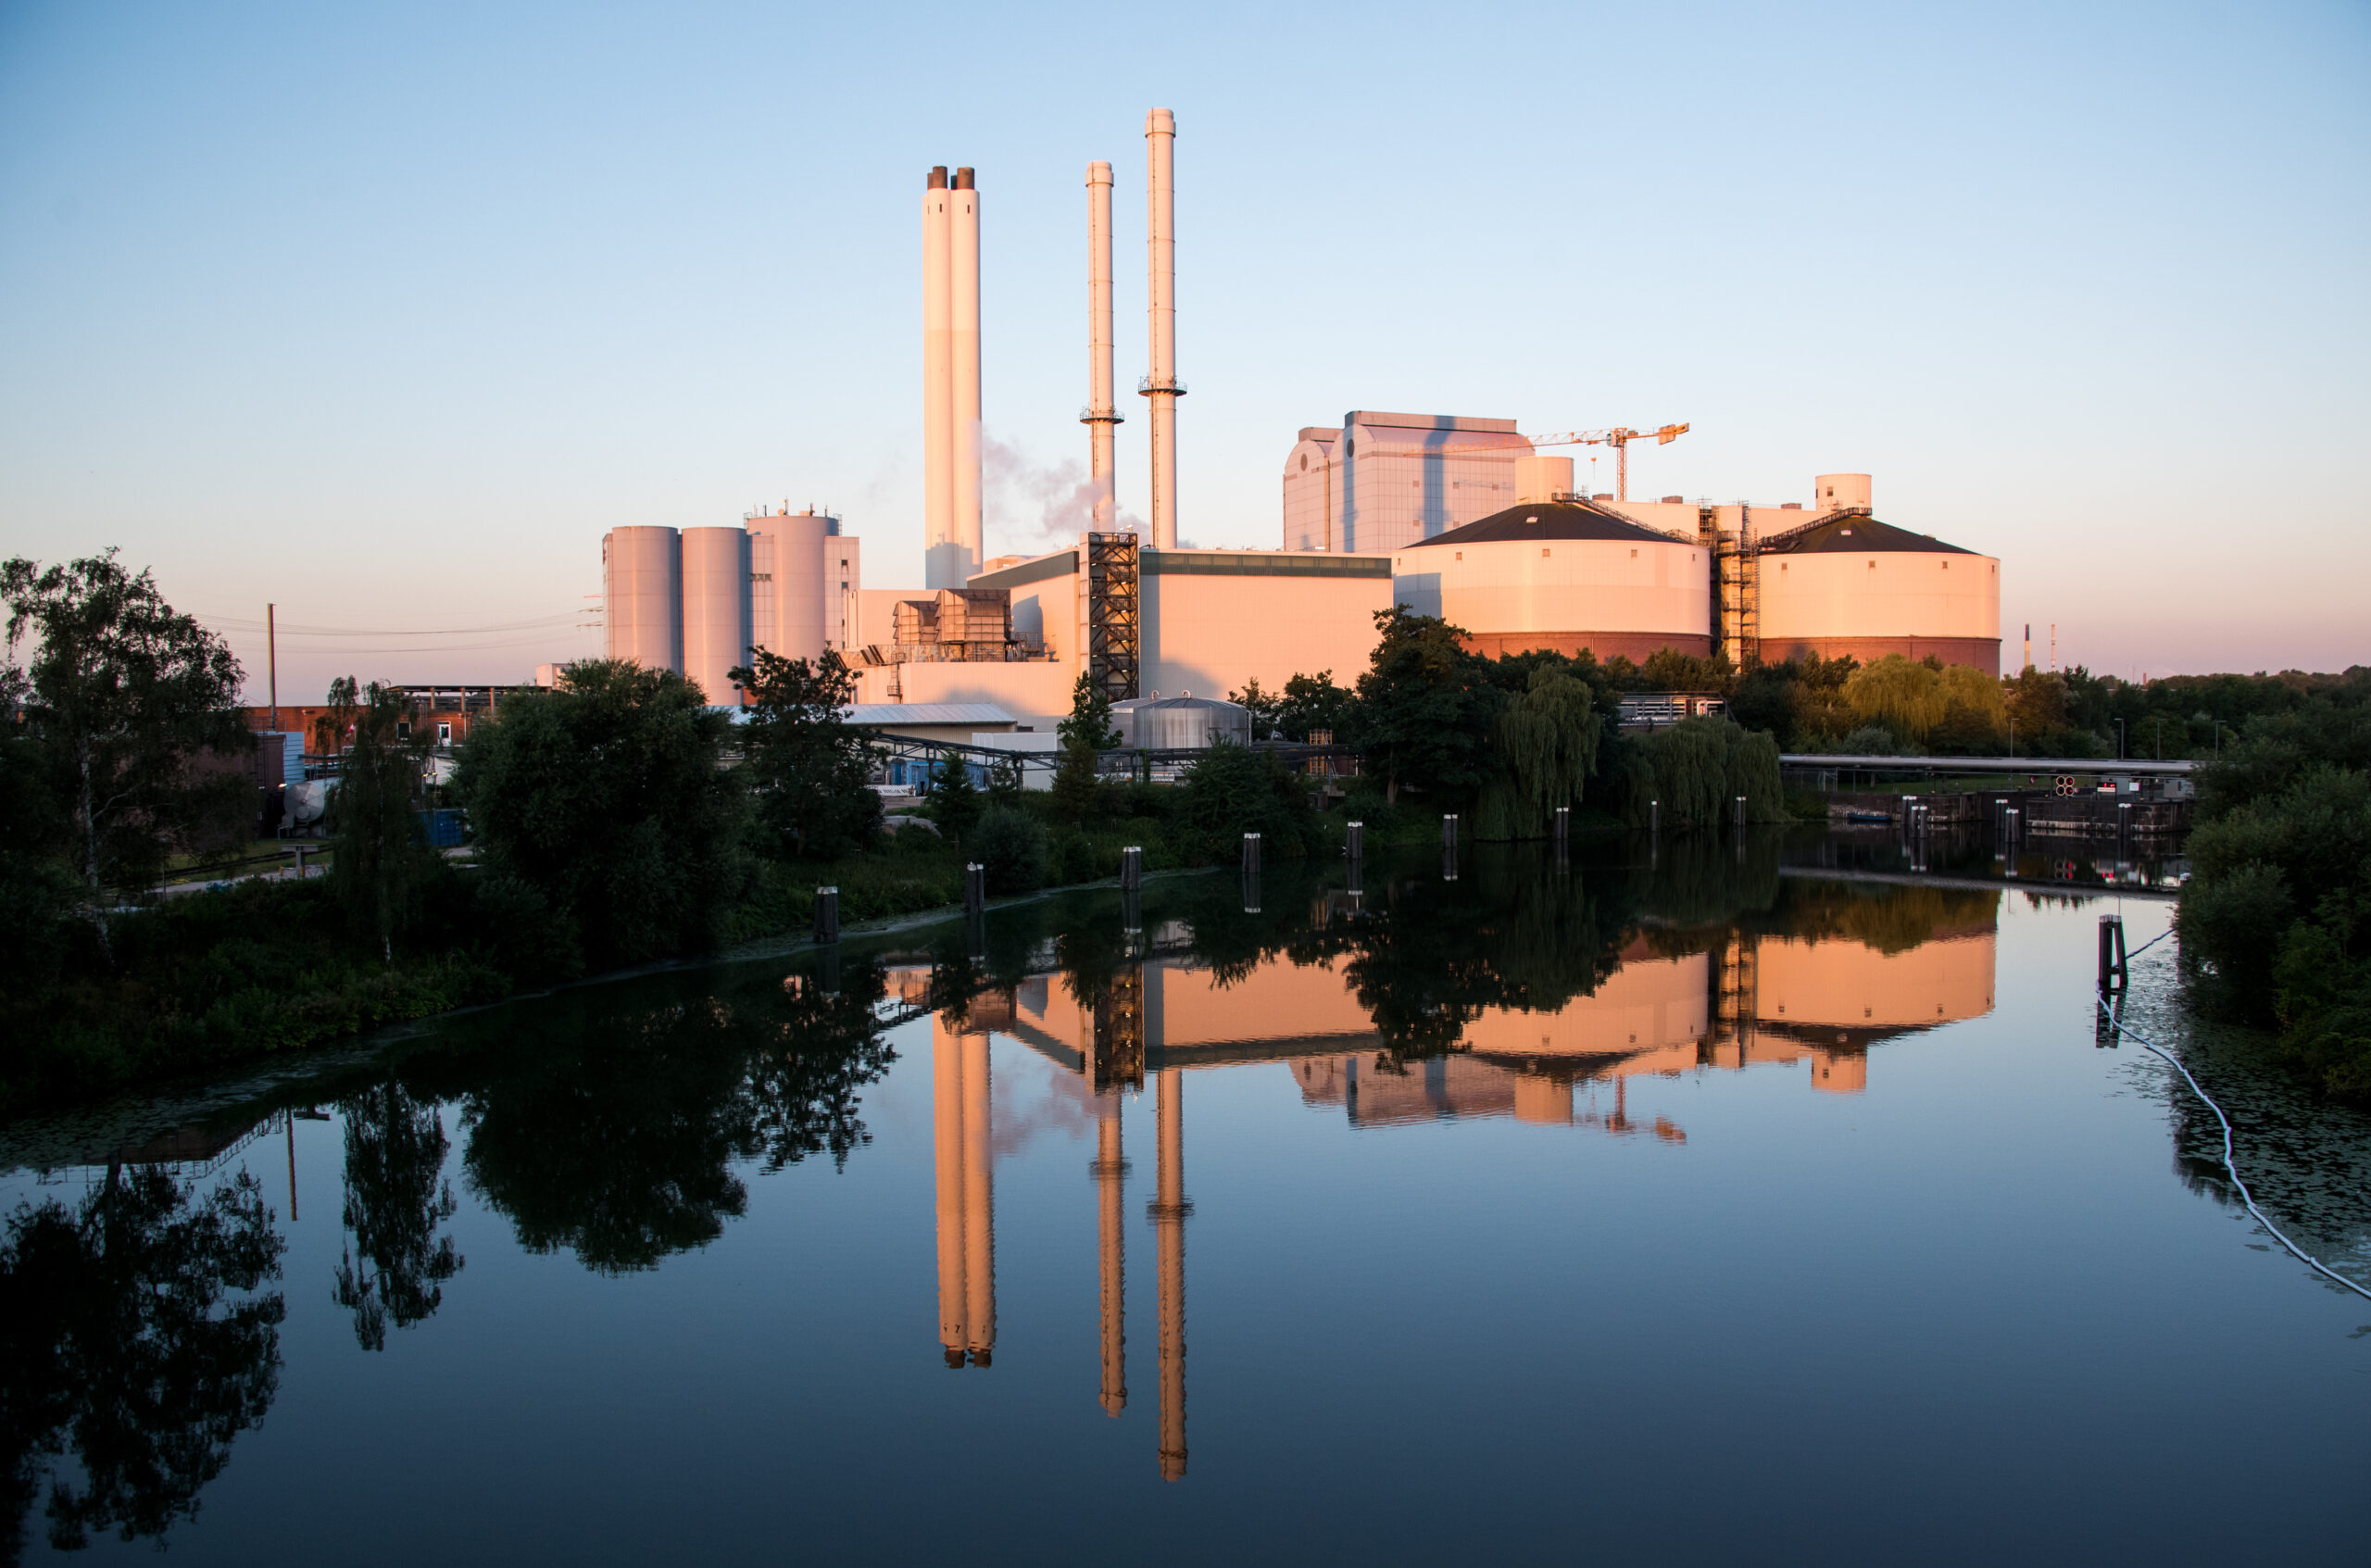 Das Heizkraftwerk Tiefstack spiegelt sich im Morgenlicht im Wasser.